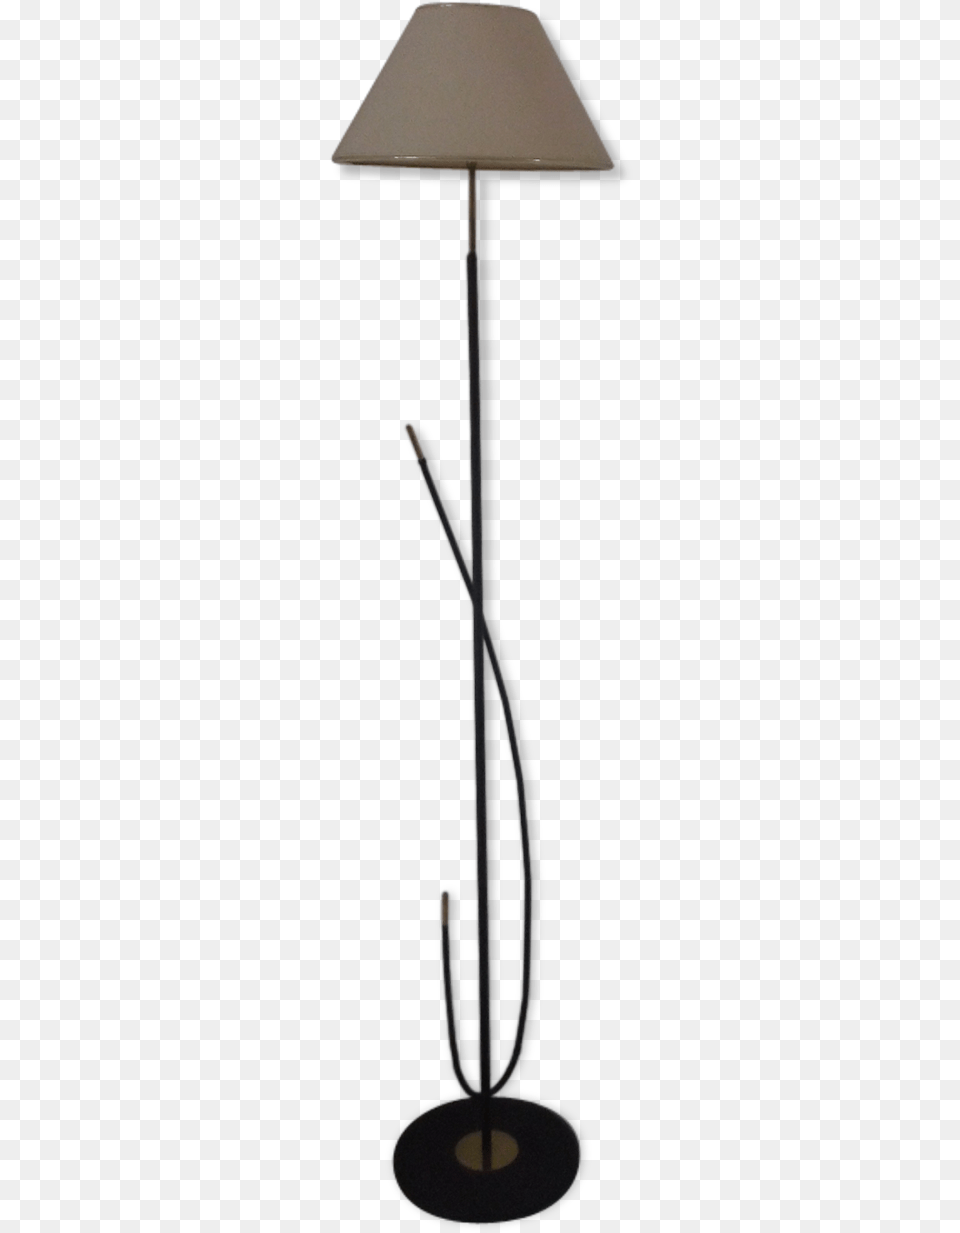 Lampshade, Lamp, Table Lamp, Furniture Free Png